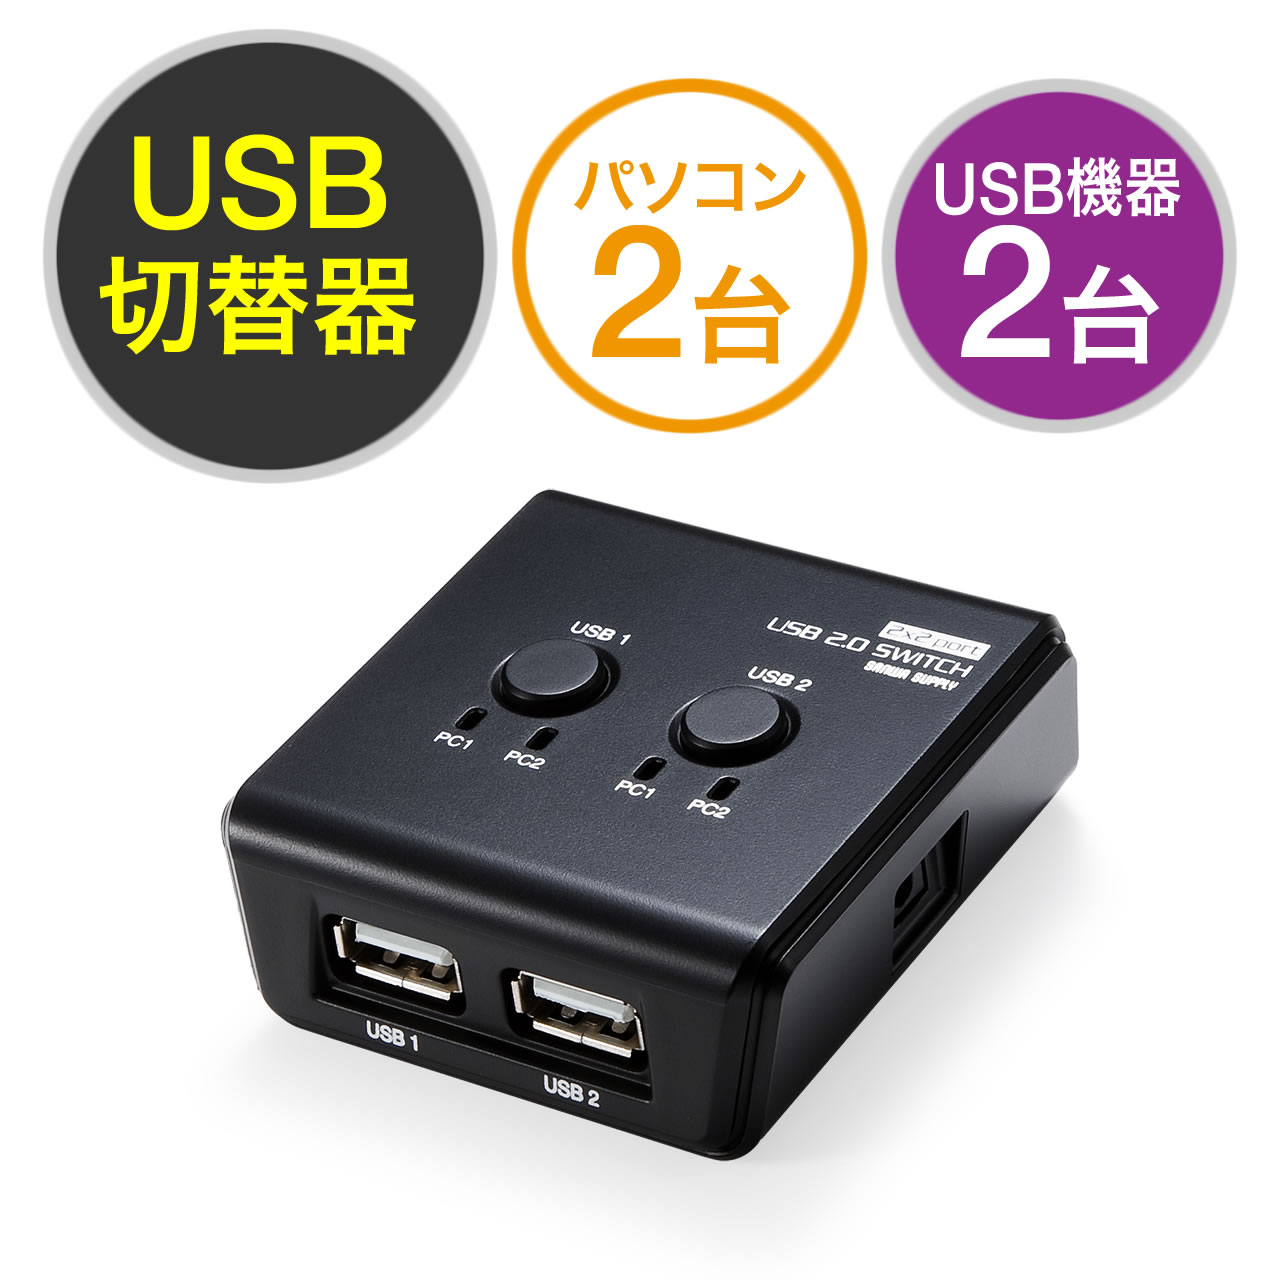 時間指定不可】 USB3.0 切り替え機 切替器 pc2台用 usb 4ポート 高速転送 セレクター スイッチ 手動切替器 プリンタ マウス 送料無料 